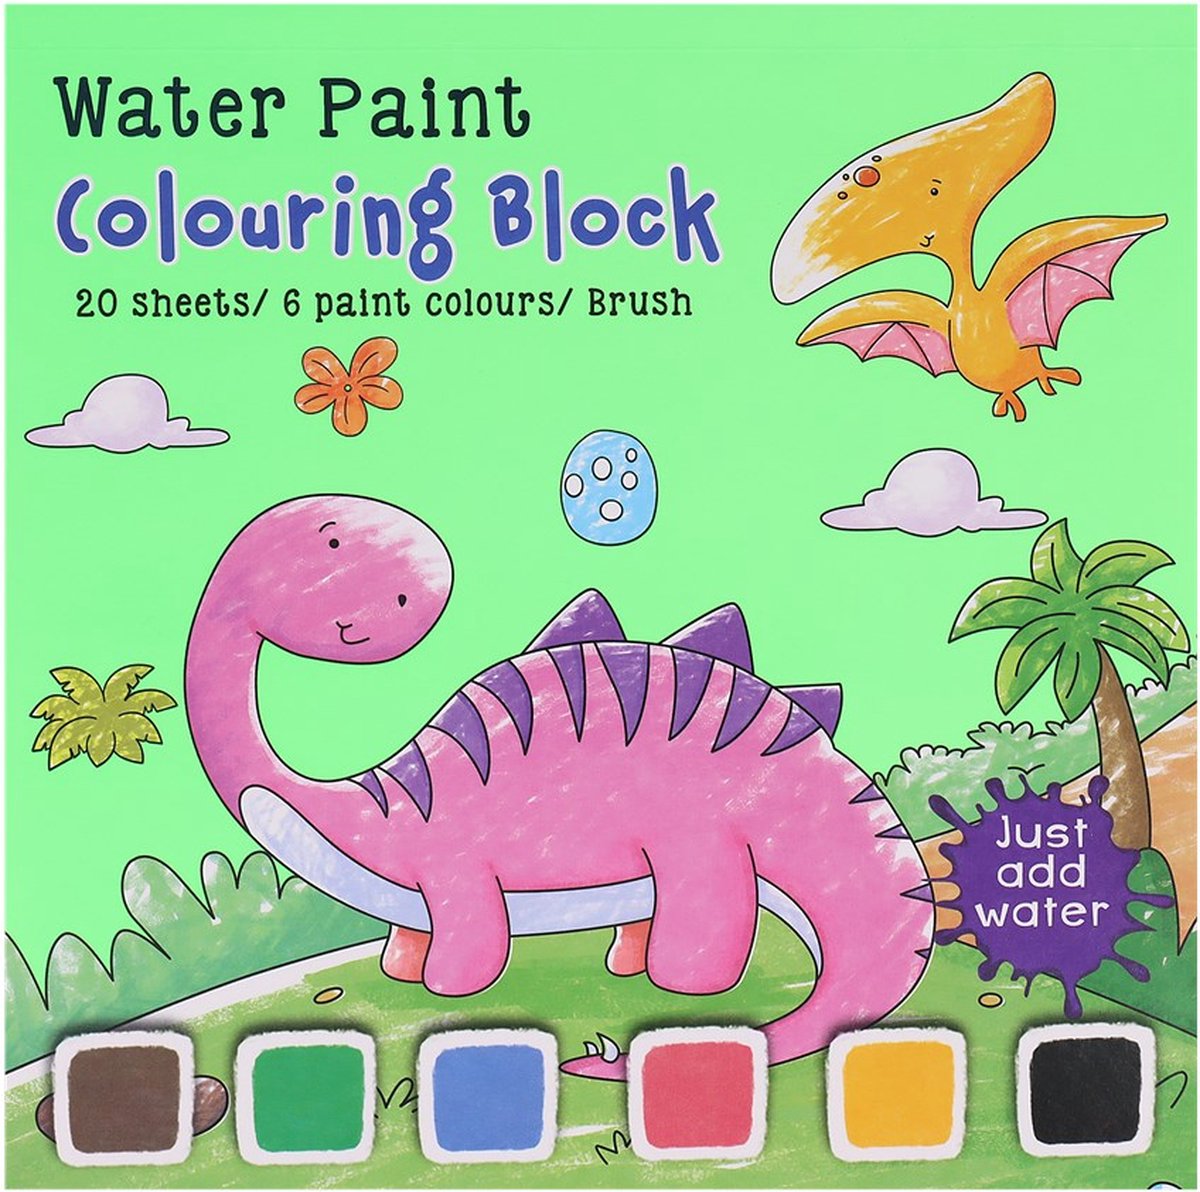 Water paint colouring block - Kleurblok met waterverf - kleurboek diverse assorti